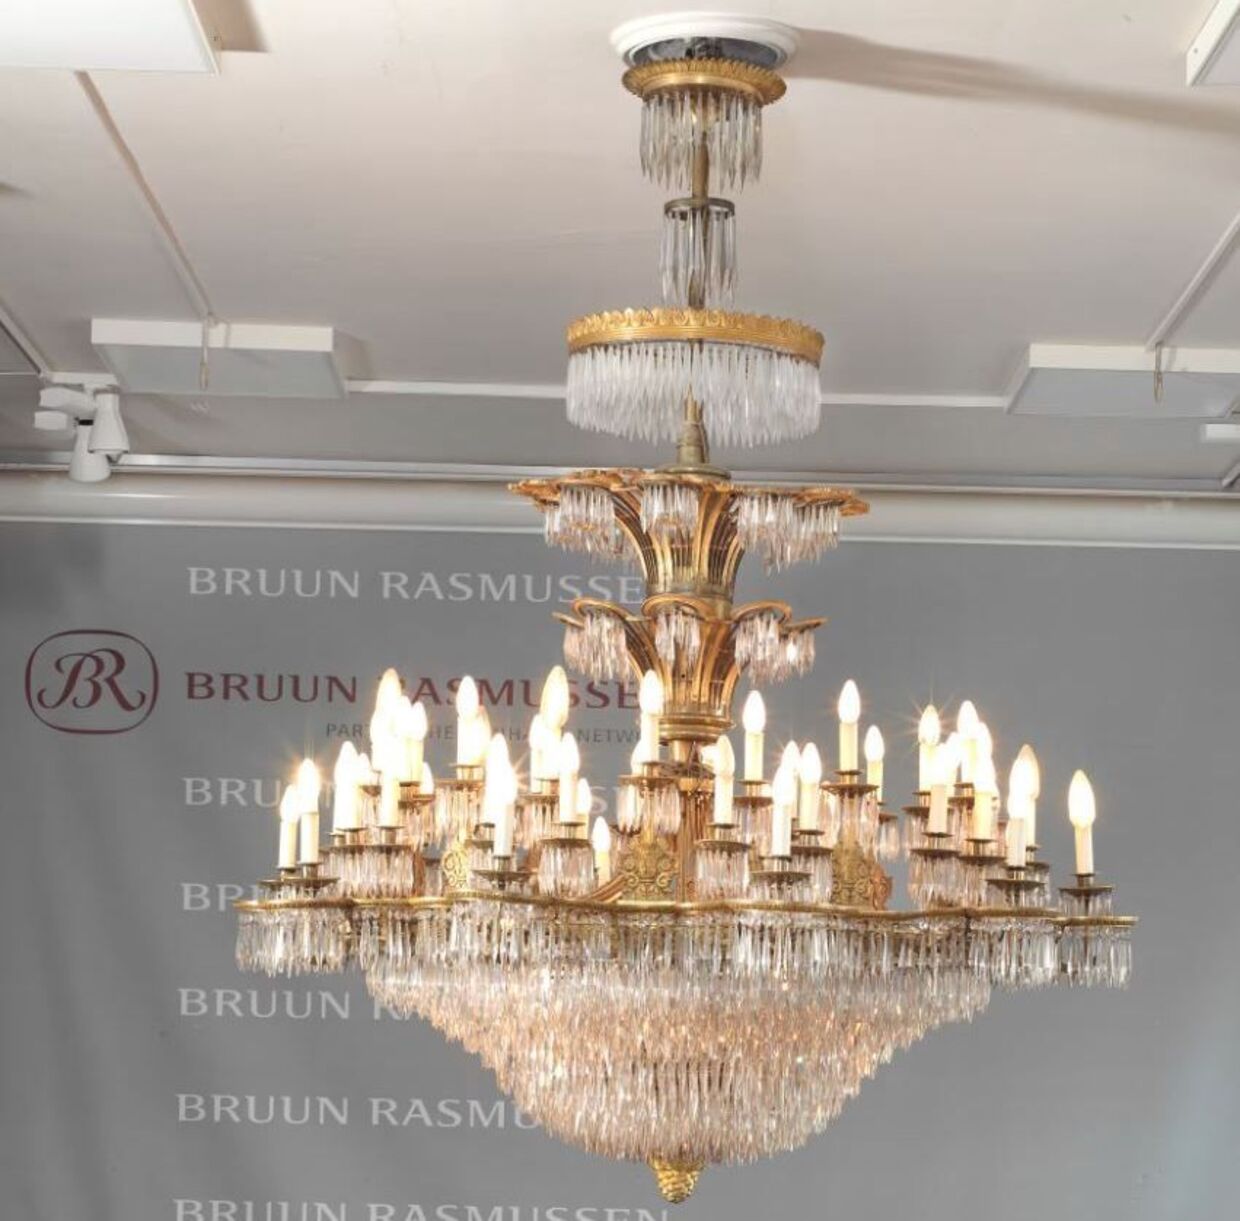 På den sidste auktion i lokalerne i Bredgade kan man købe den fornemme lysekrone, der har hængt alle 75 år i auktionssalen. Foto: Bruun Rasmussen / PR.